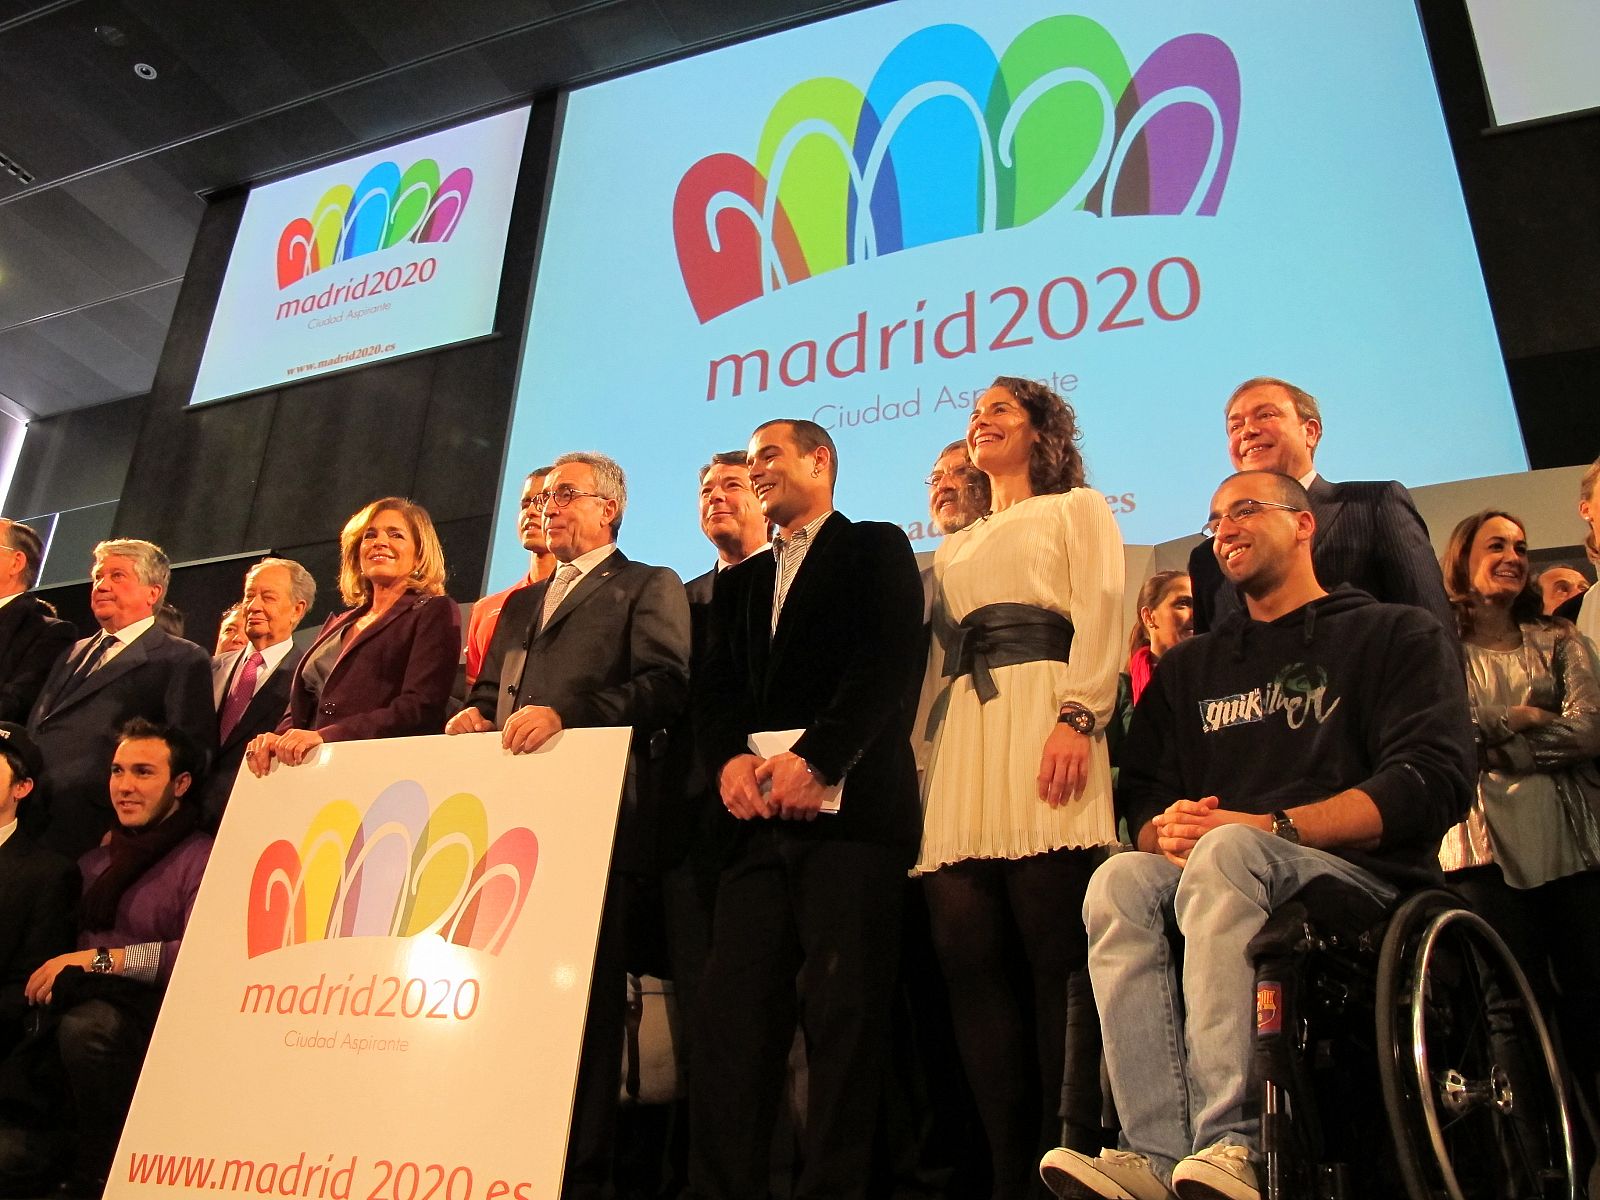 Madrid 2020, el día de la presentación del logo como ciudad aspirante a organizar los Juegos Olímpicos de 2020.